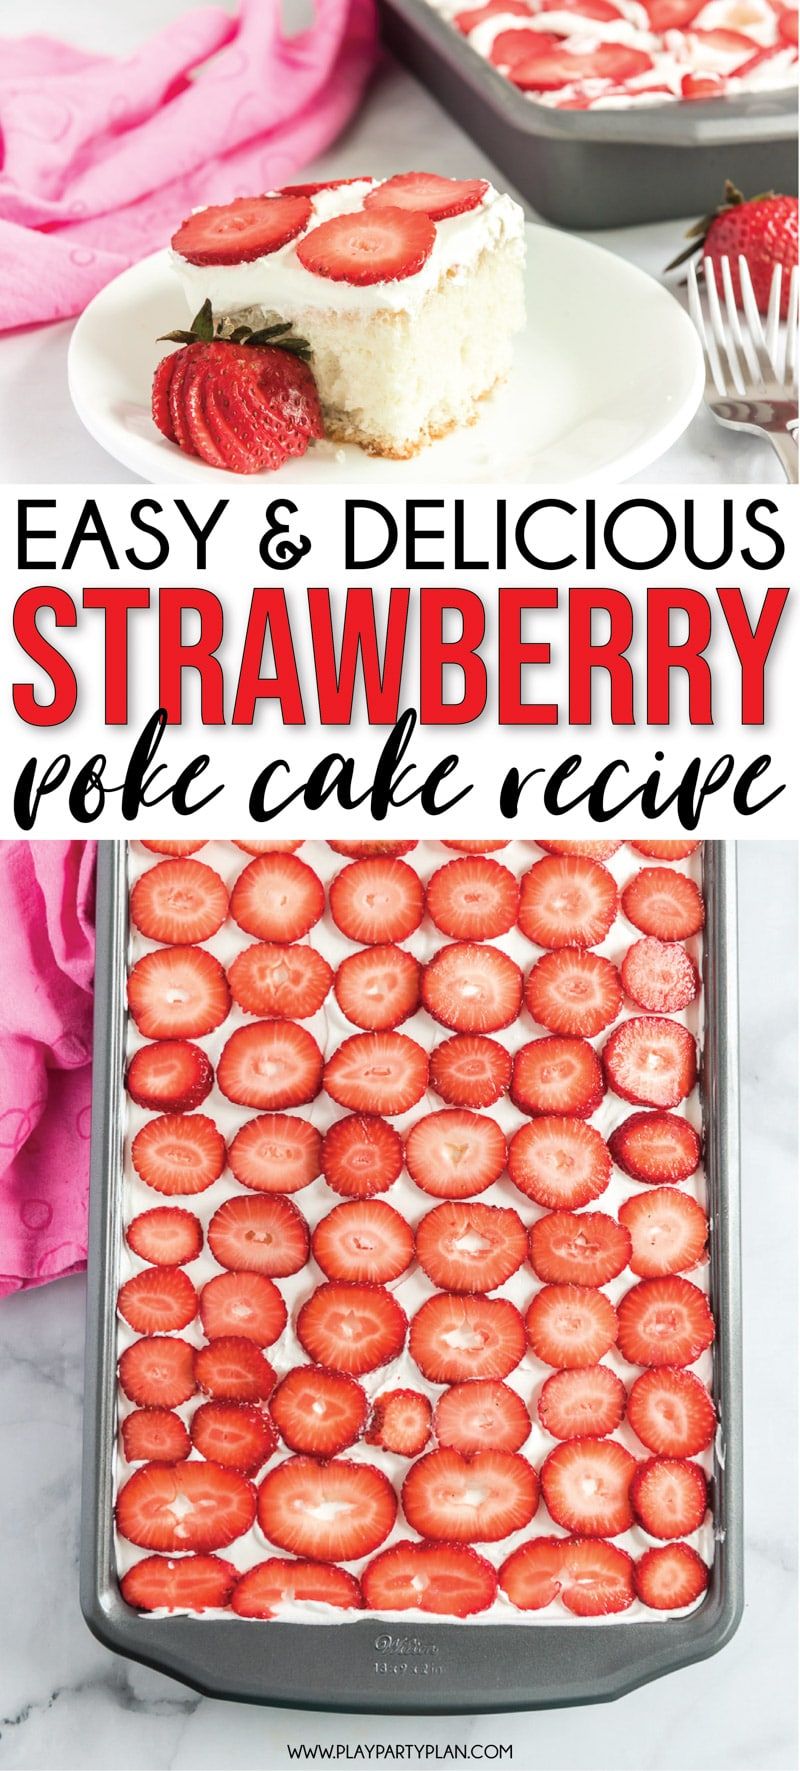 Ett enkelt och läckert recept för jordgubbskakor som gör den perfekta sommarefterrätten!